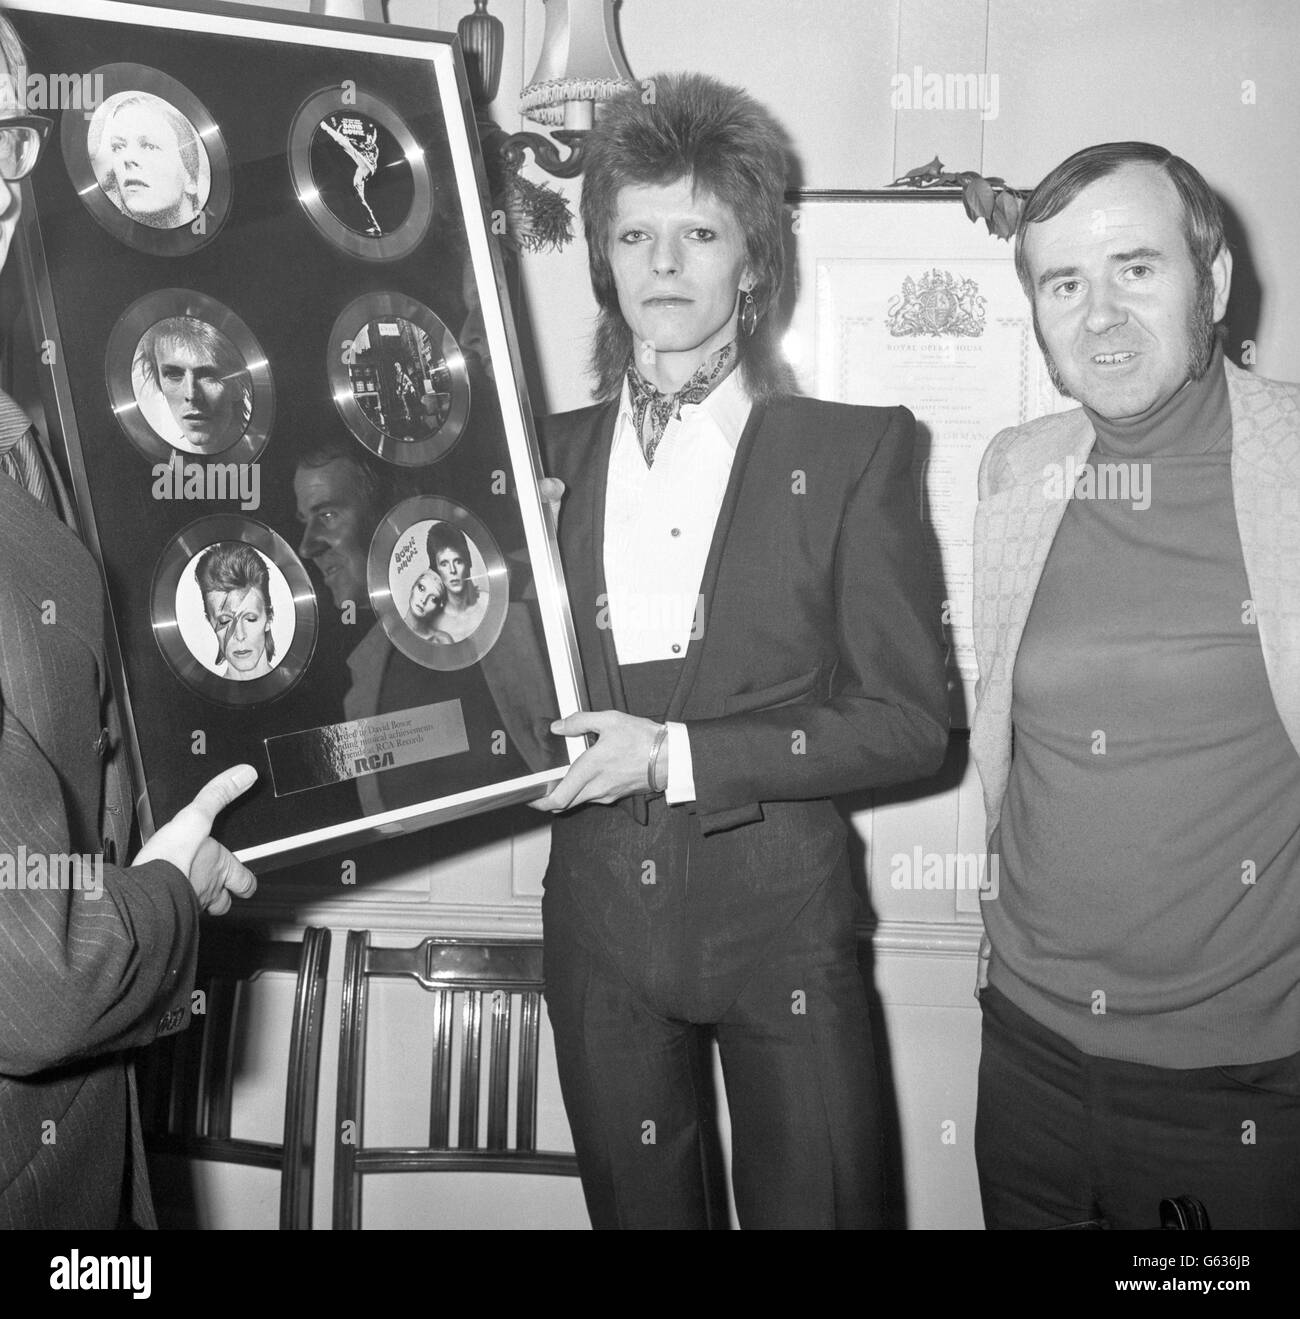 David Bowie al ristorante Rules dopo aver ricevuto una presentazione di sei dischi dalla RCA Records per segnare l'occasione di avere sei album in classifica nel 1973. Foto Stock